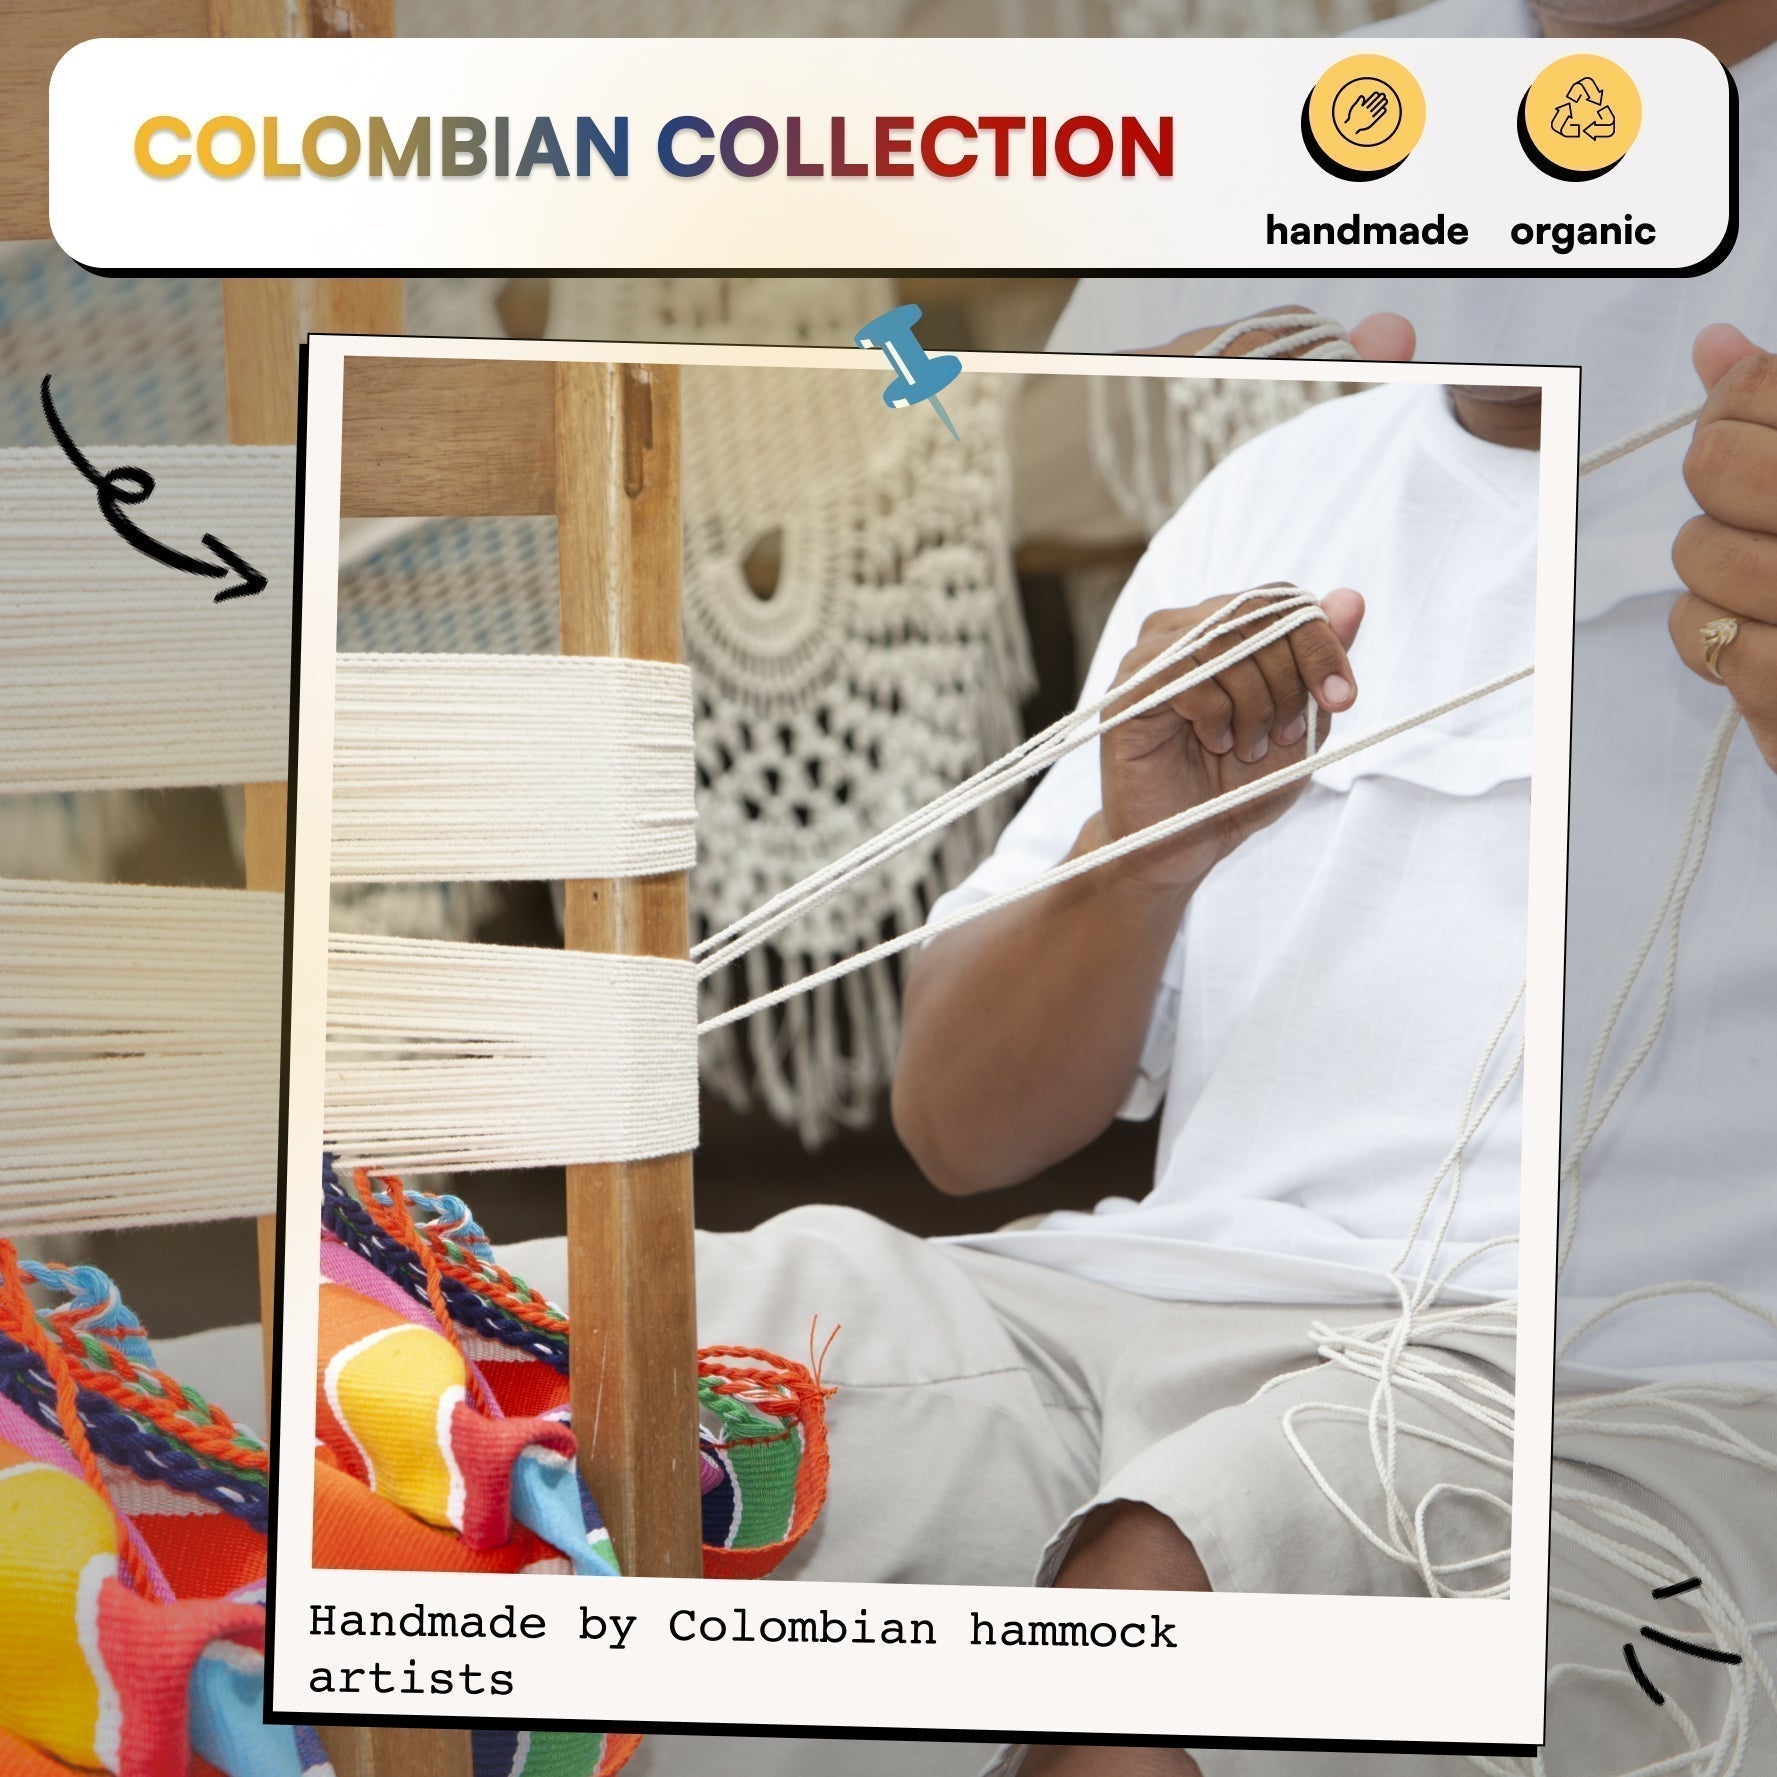 Colombian Morena Curcuma Cocoon Set - PotenzaHammocks